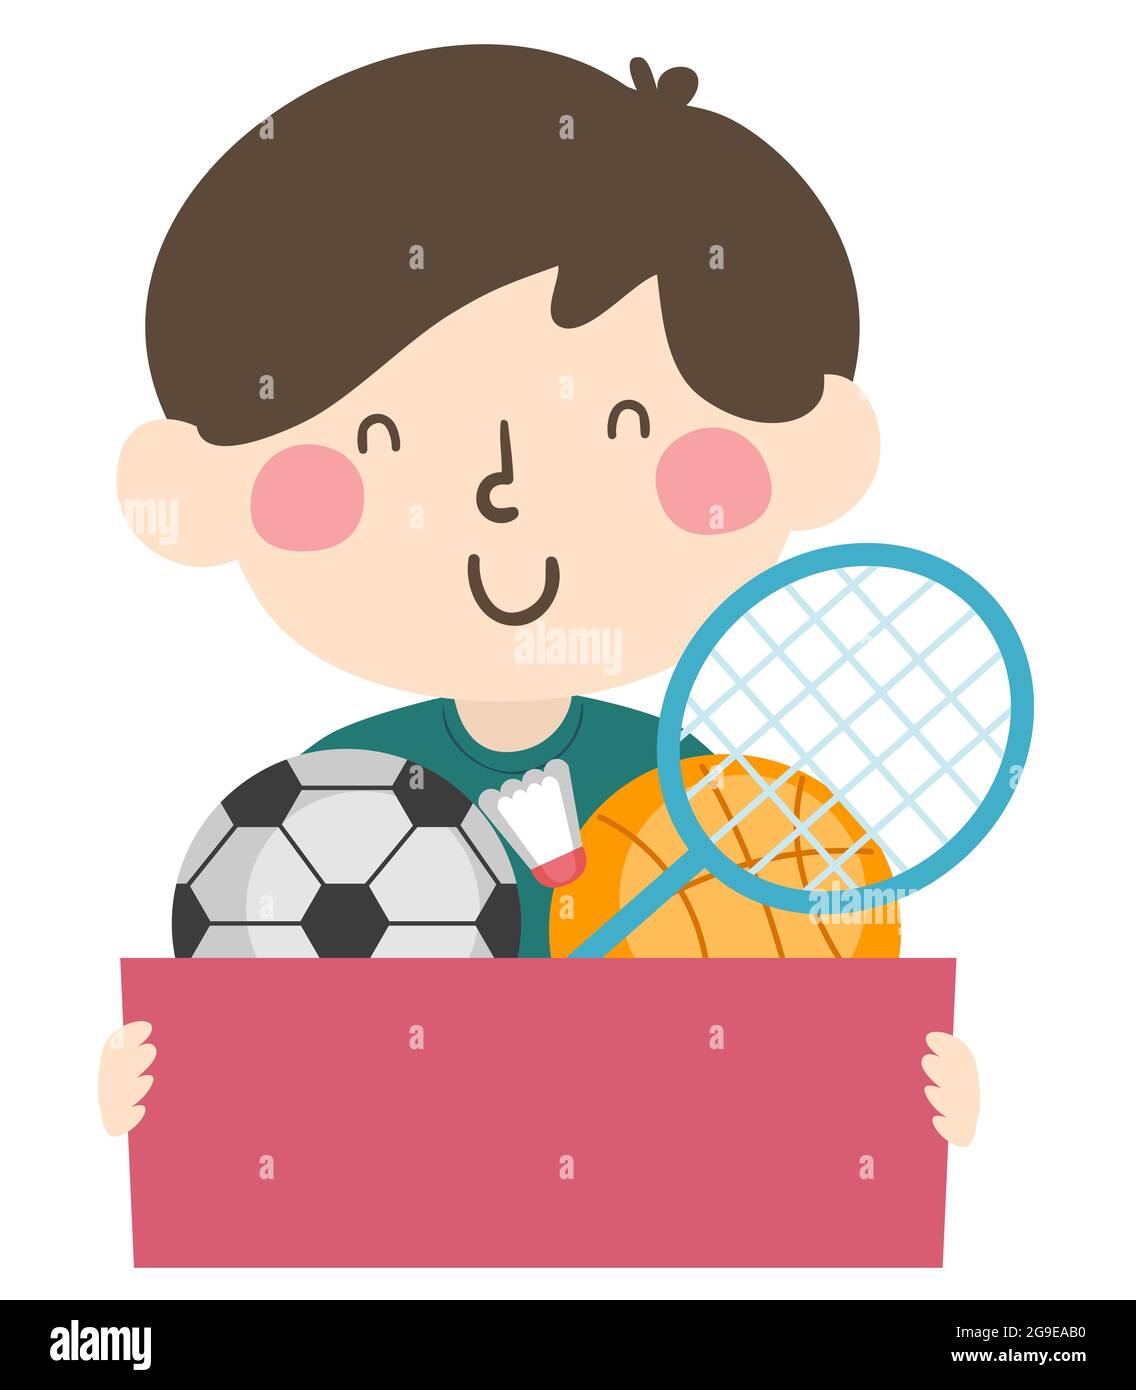 Ilustración de un coleccionista de equipo deportivo de niño que lleva una caja llena de bolas de fútbol y baloncesto, tapeta Badminton y shuttlecock Foto de stock